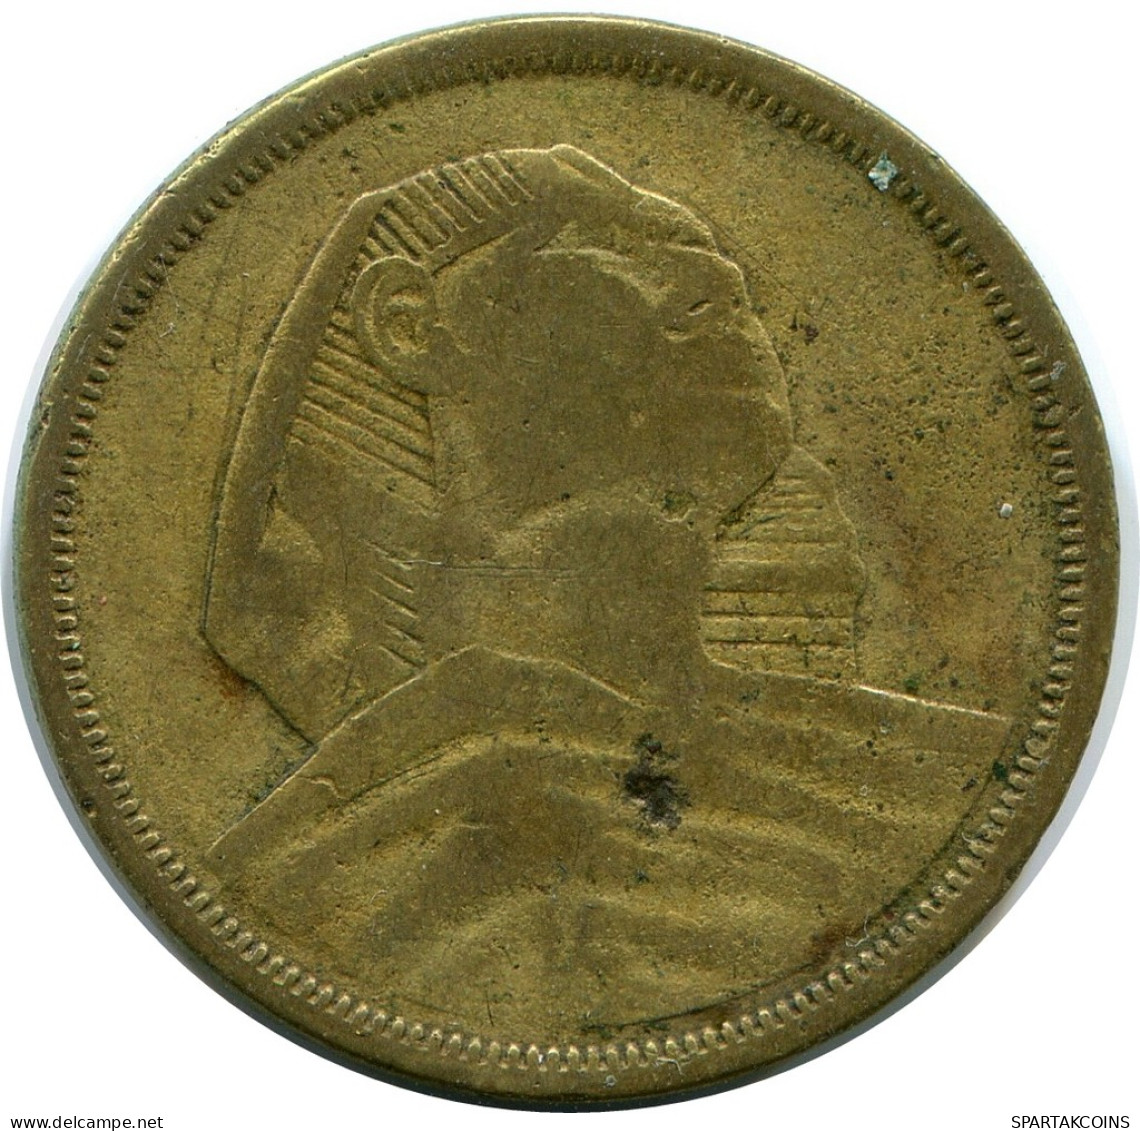 10 MILLIEMES 1957 EGYPT Islamic Coin #AP122.U - Egypt